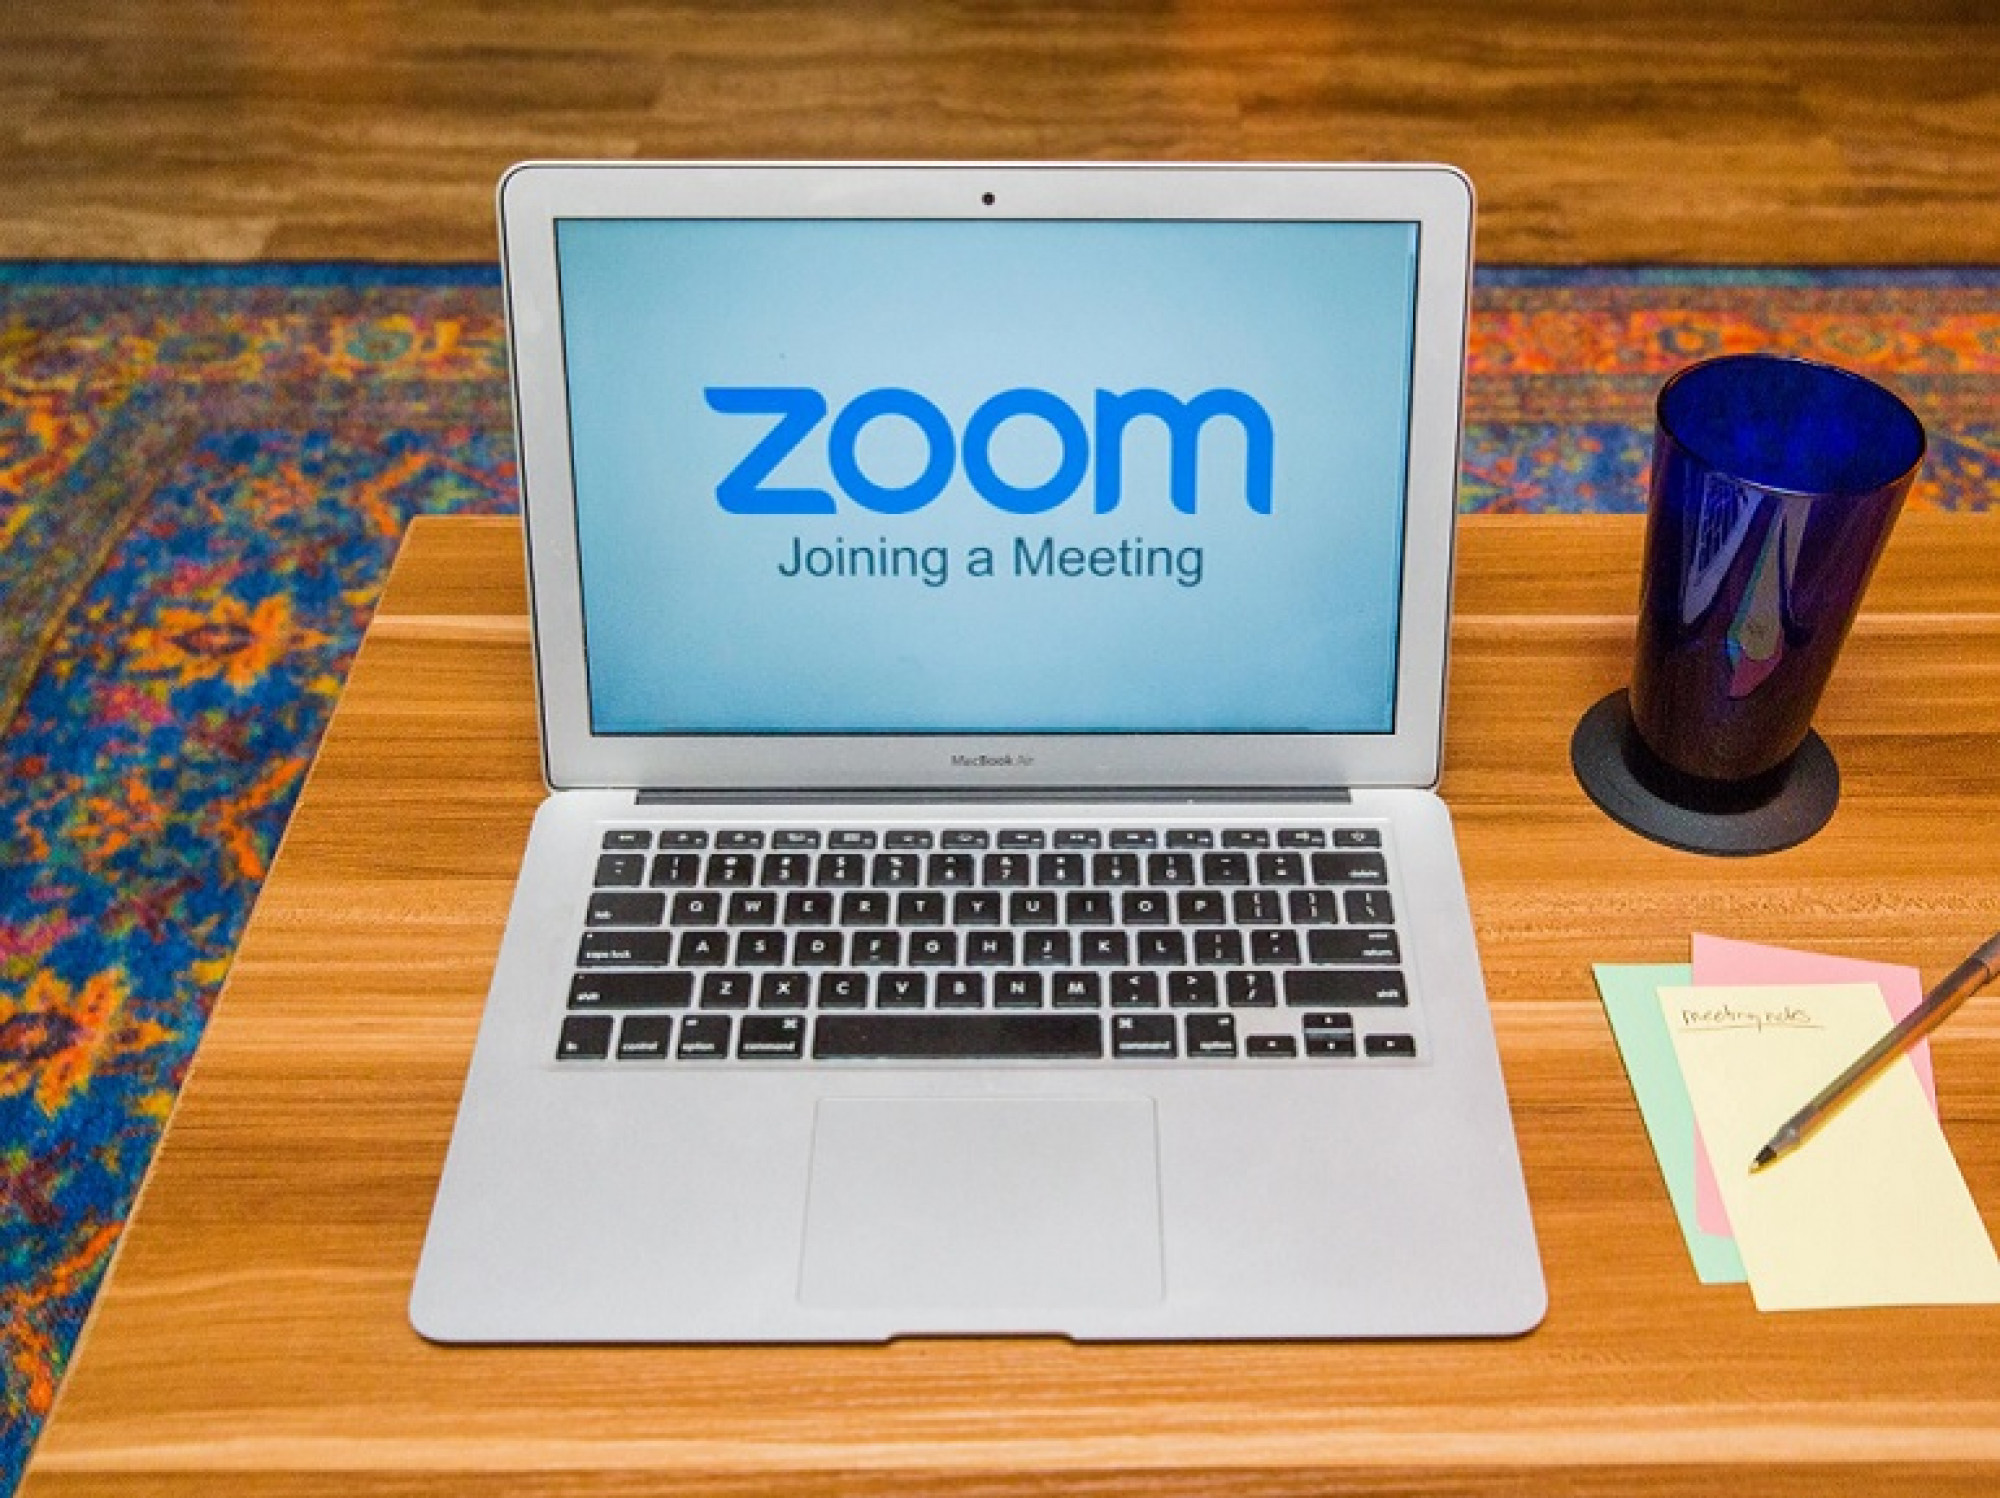 Giống như Facebook hay Twitter, Zoom cũng trở thành một phần chủ chốt trong văn hóa internet. Ảnh: @AFP.